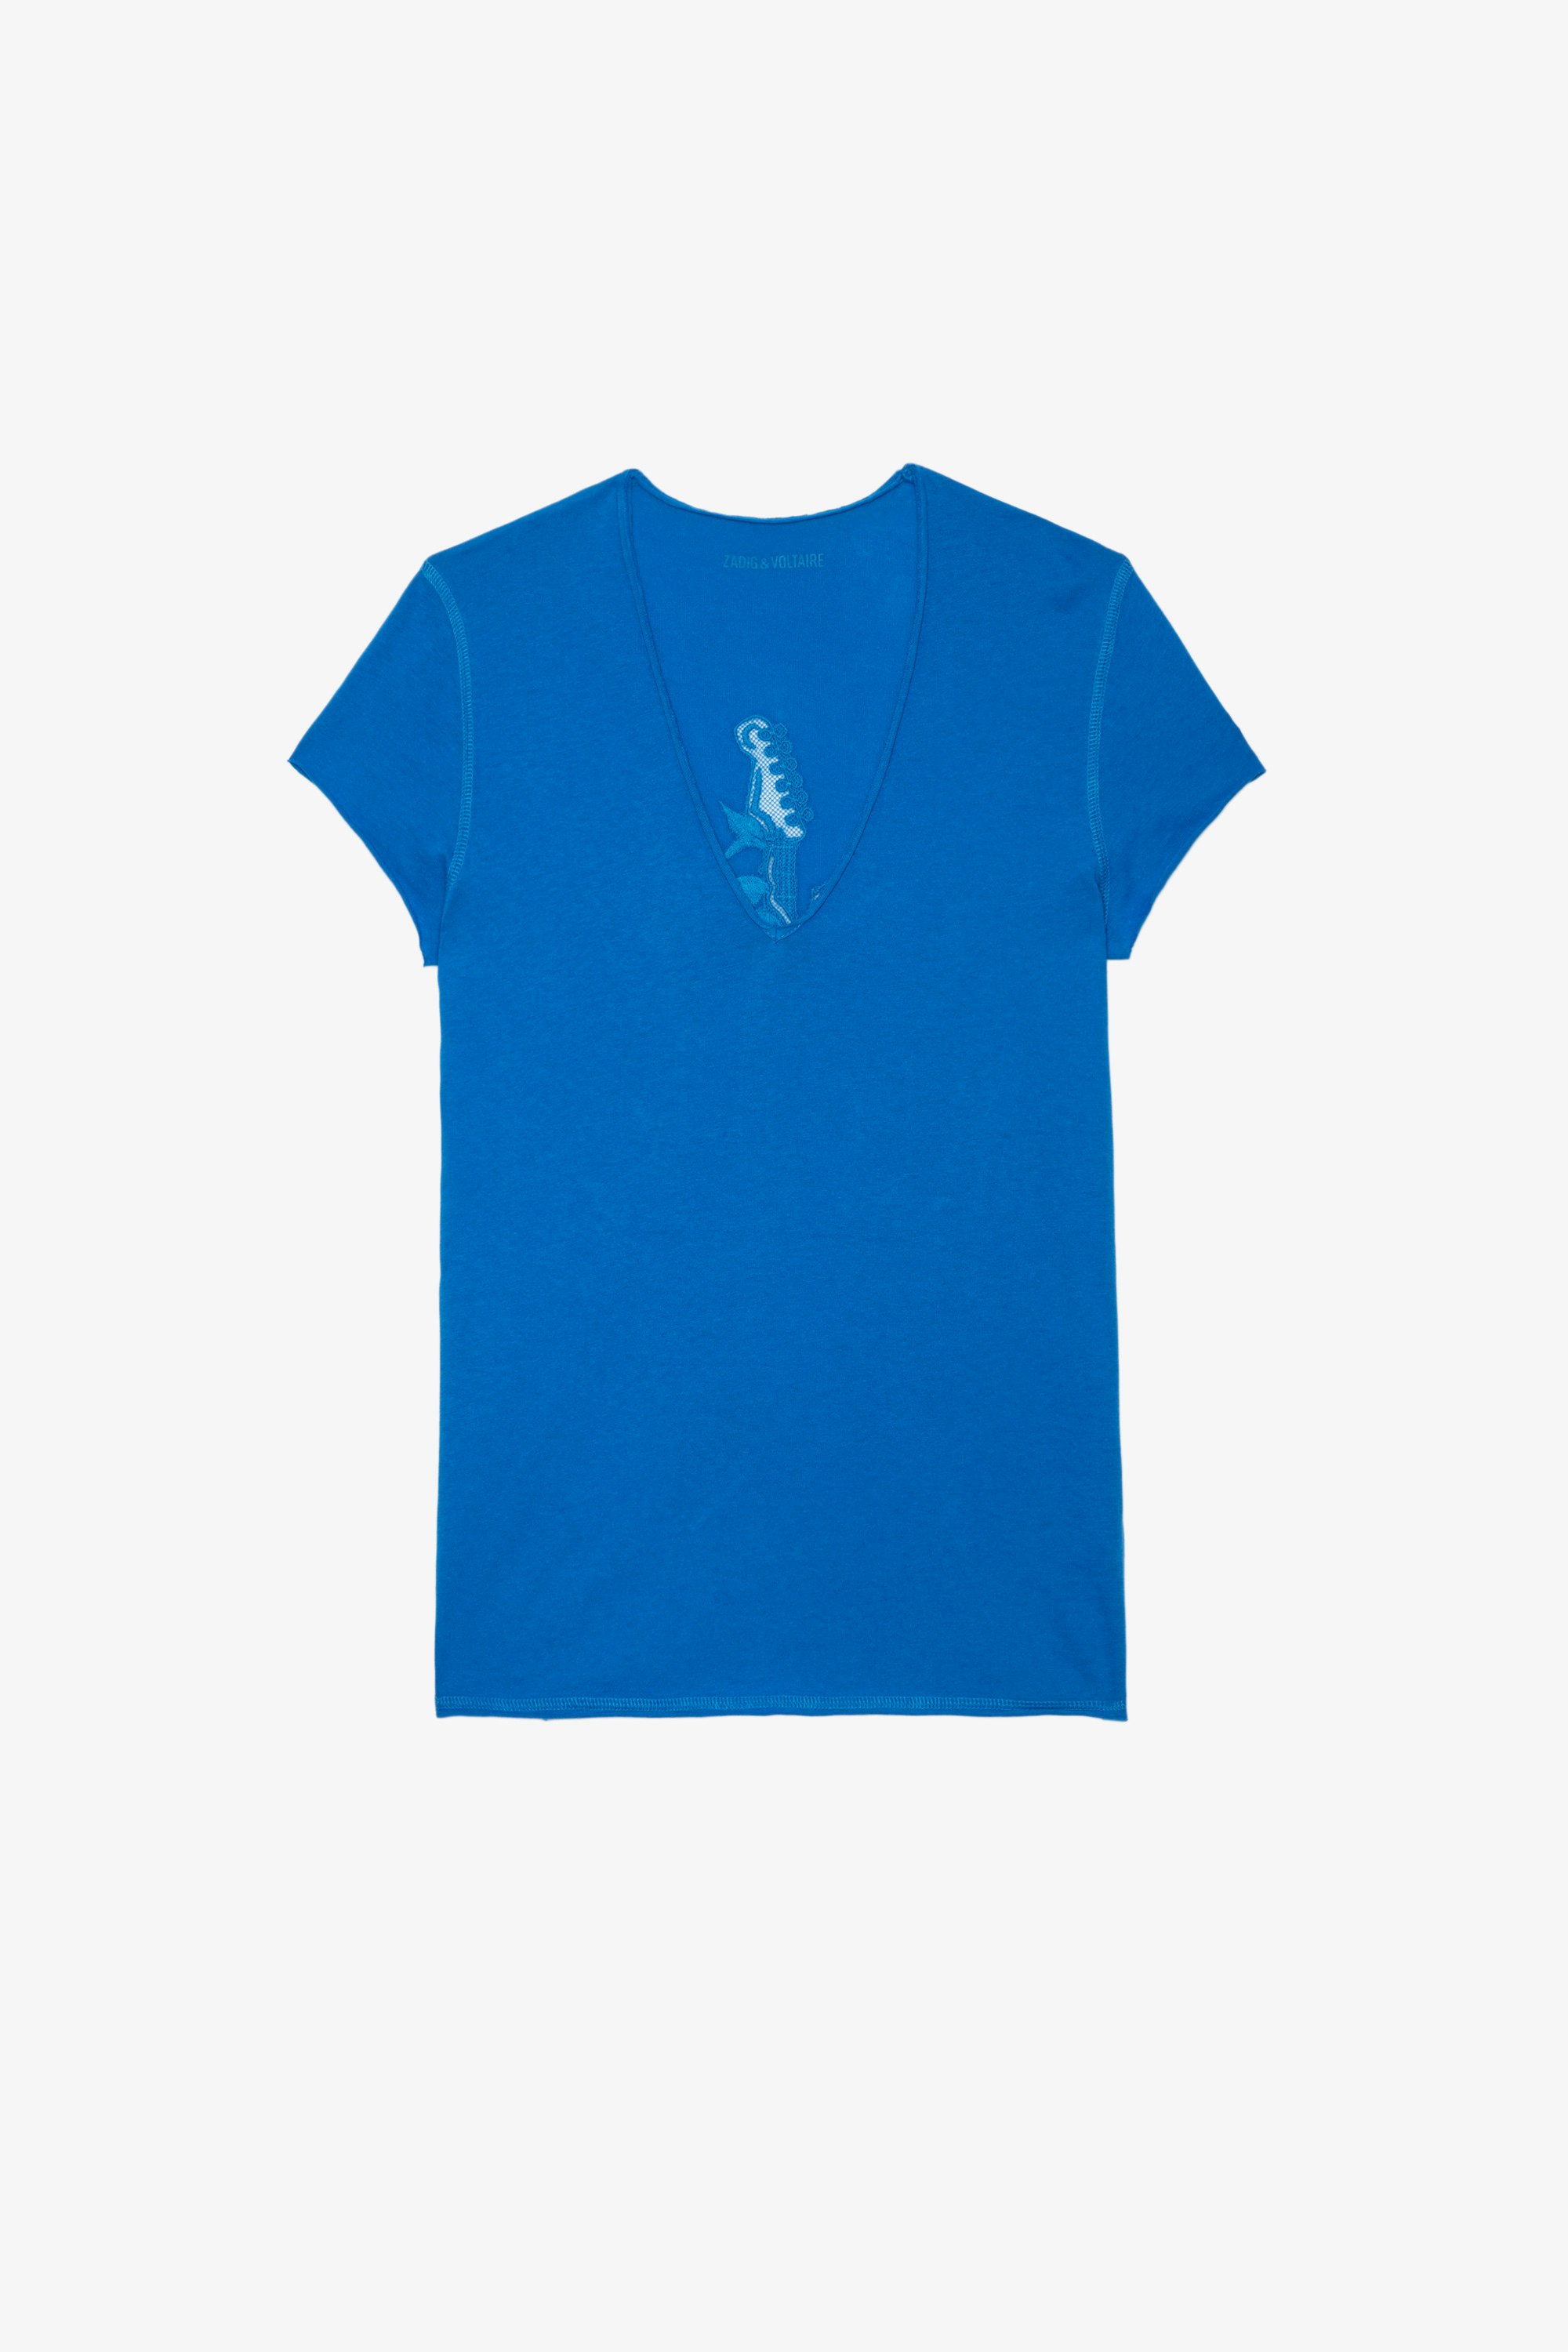 Camiseta Story Fishnet Guitar Camiseta de algodón azul con cuello en V y manga corta, con motivo de guitarra en la espalda para mujer